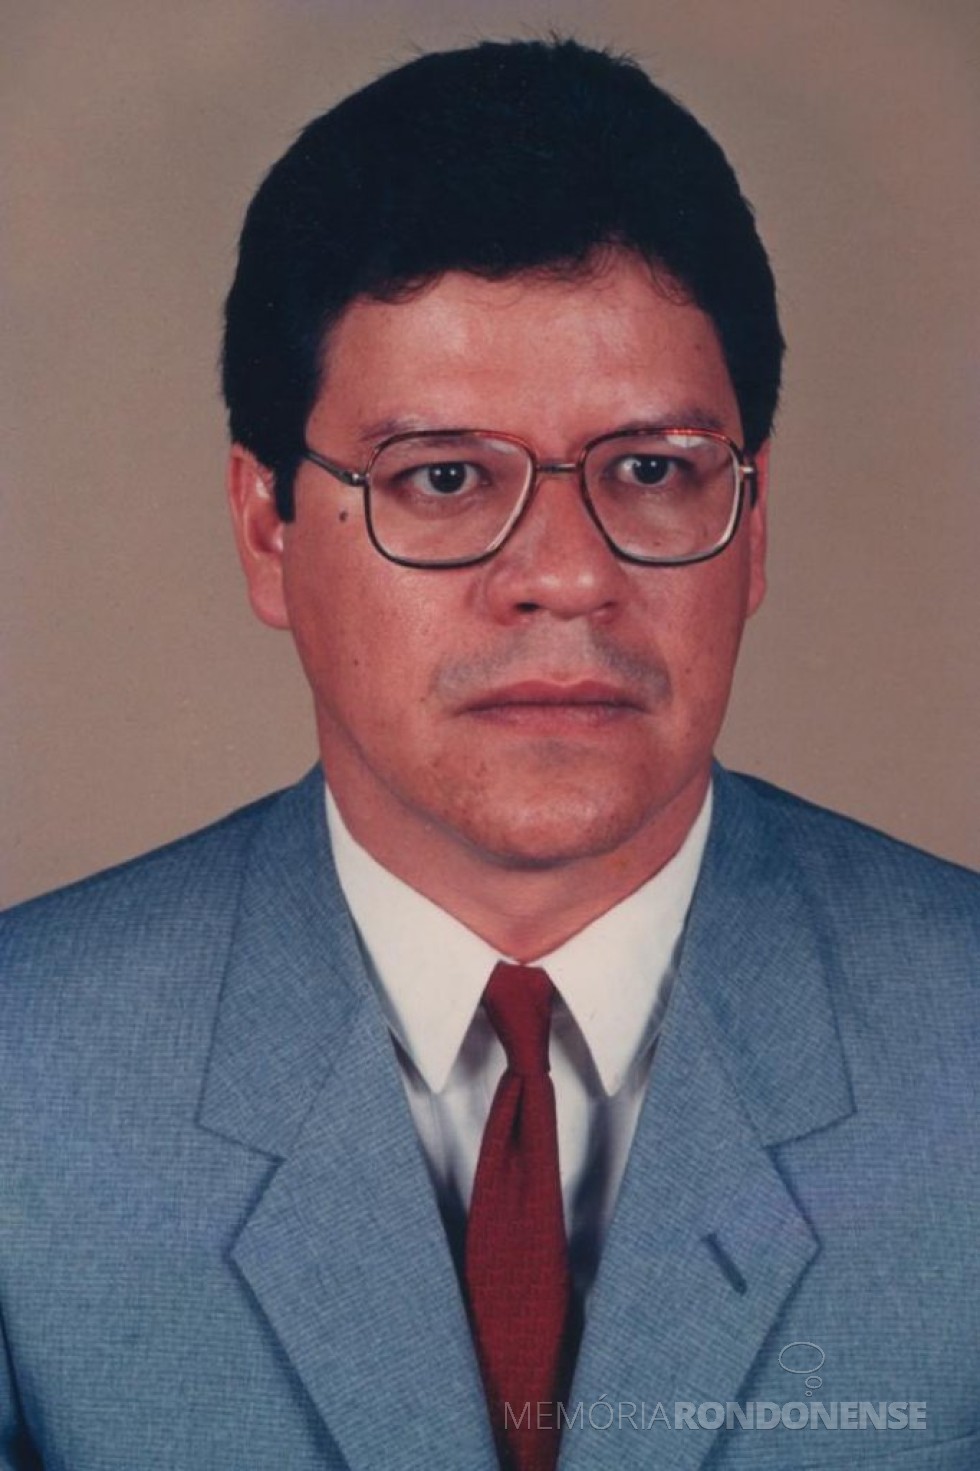 Médico rondonense Dr. César de Souza Faro, falecido em dezembro de 2006.
Imagem: Acervo Tribuna do Oeste - FOTO 7 -